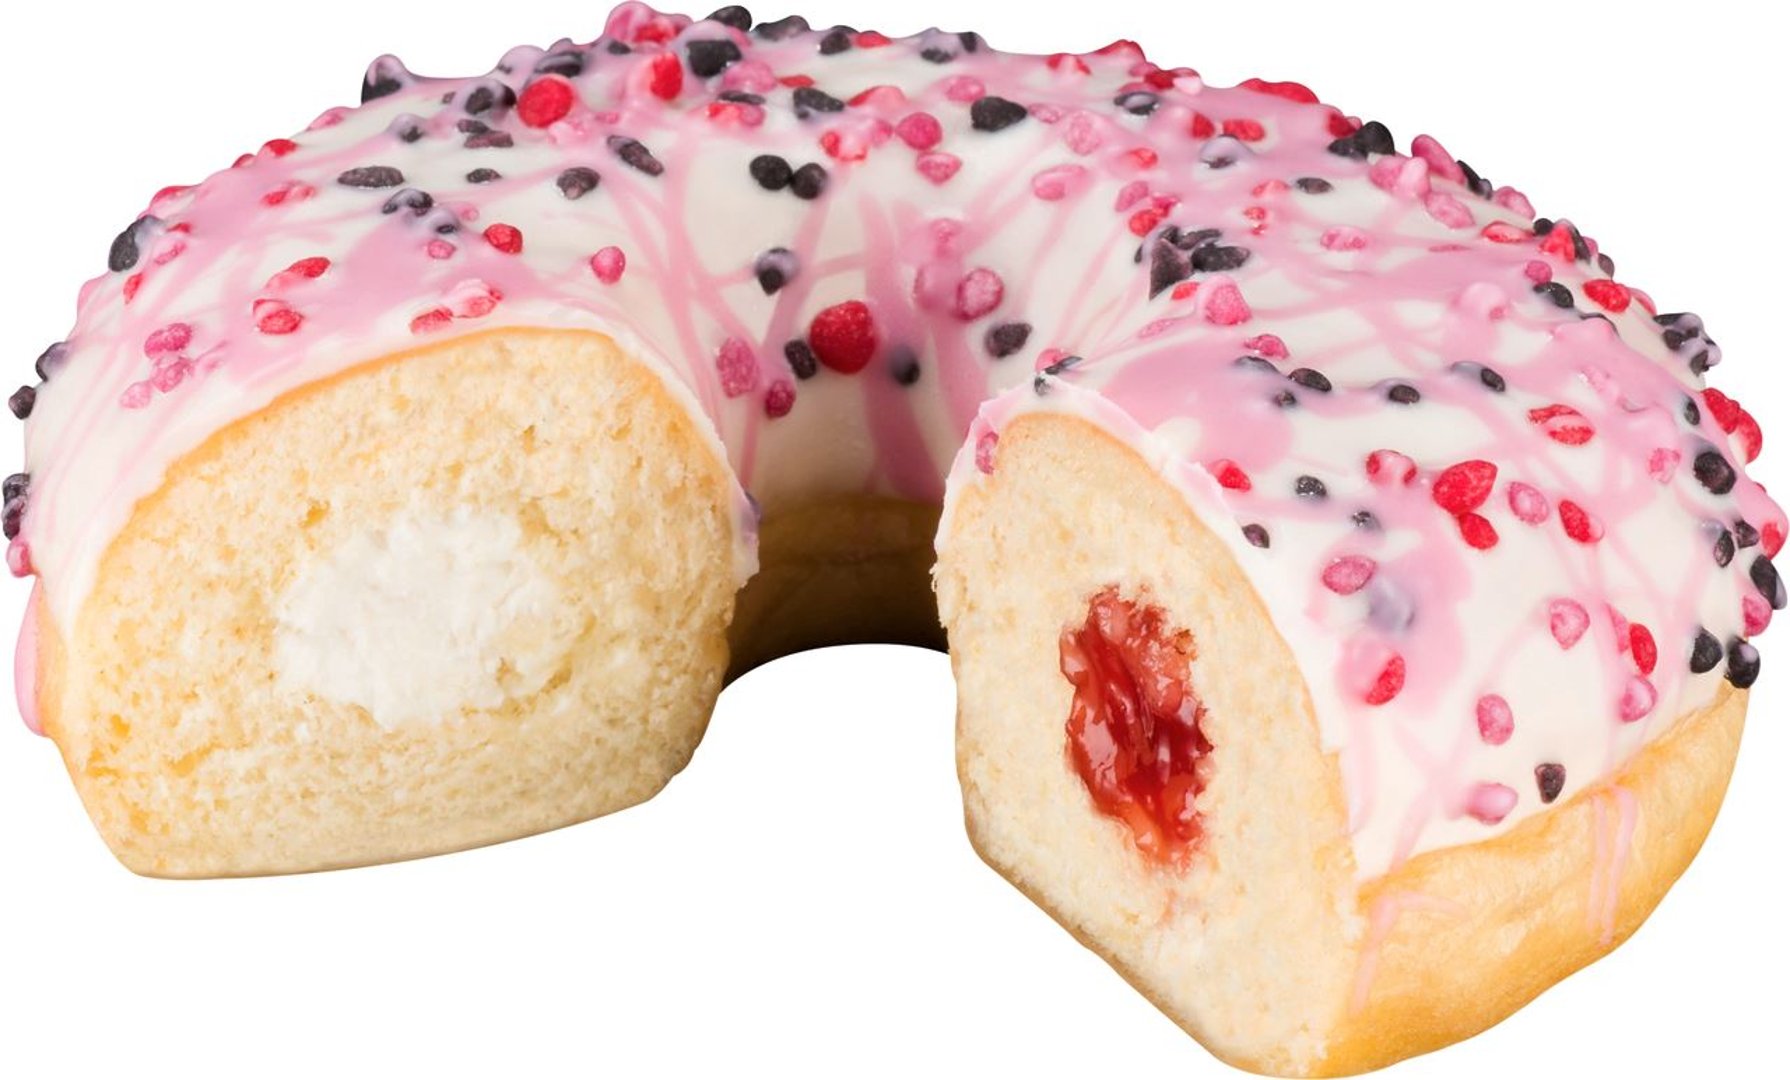 Baker & Baker - Donut Rasperry Cheesecake Sensation, tiefgefroren, fertig gebacken - 1 x 69 g Stück